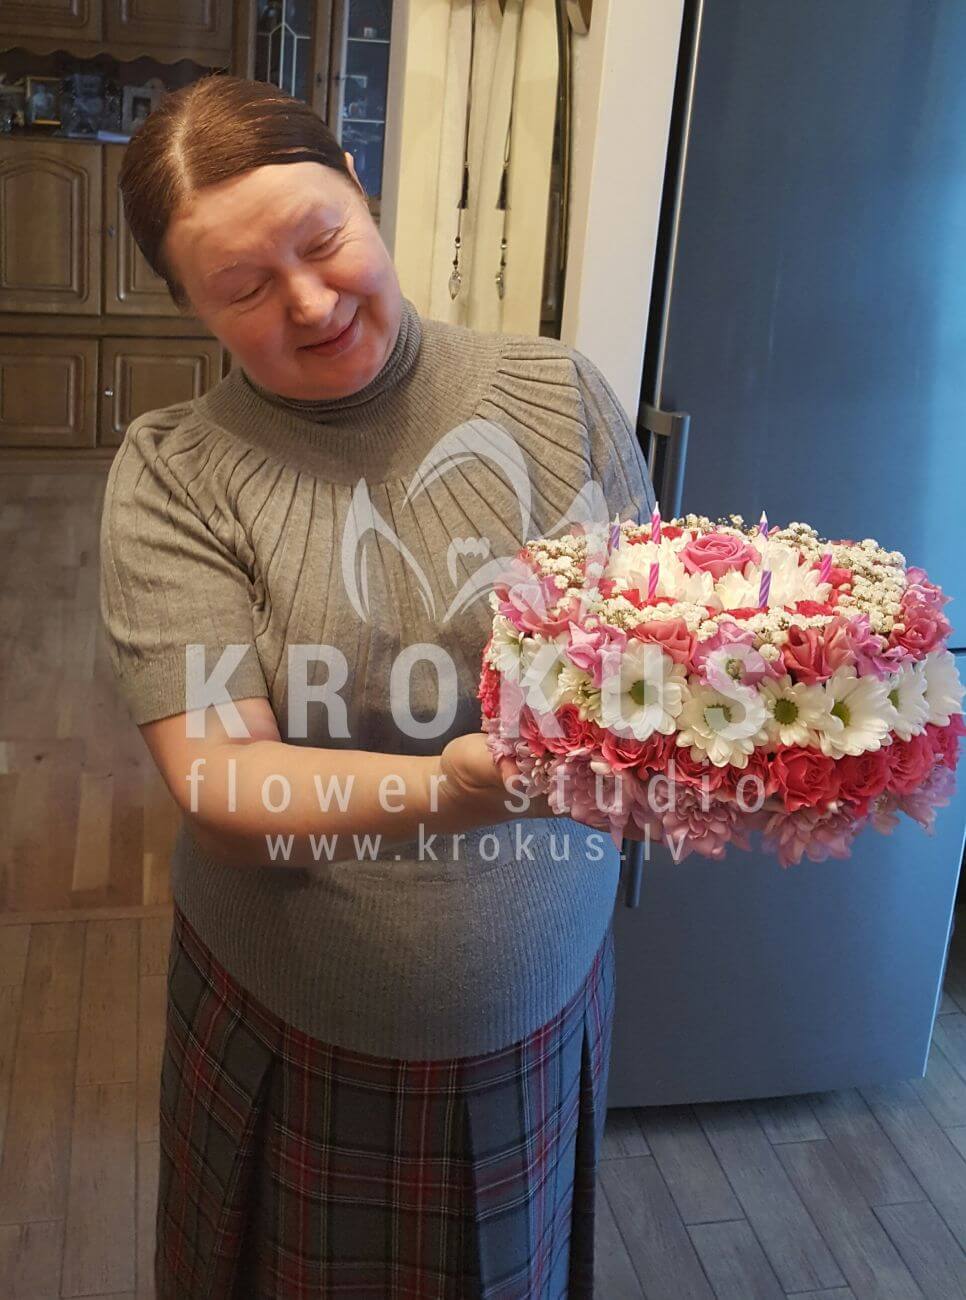 Доставка цветов в город Latvia (гвоздикихризантемываксфлауэргортензии)